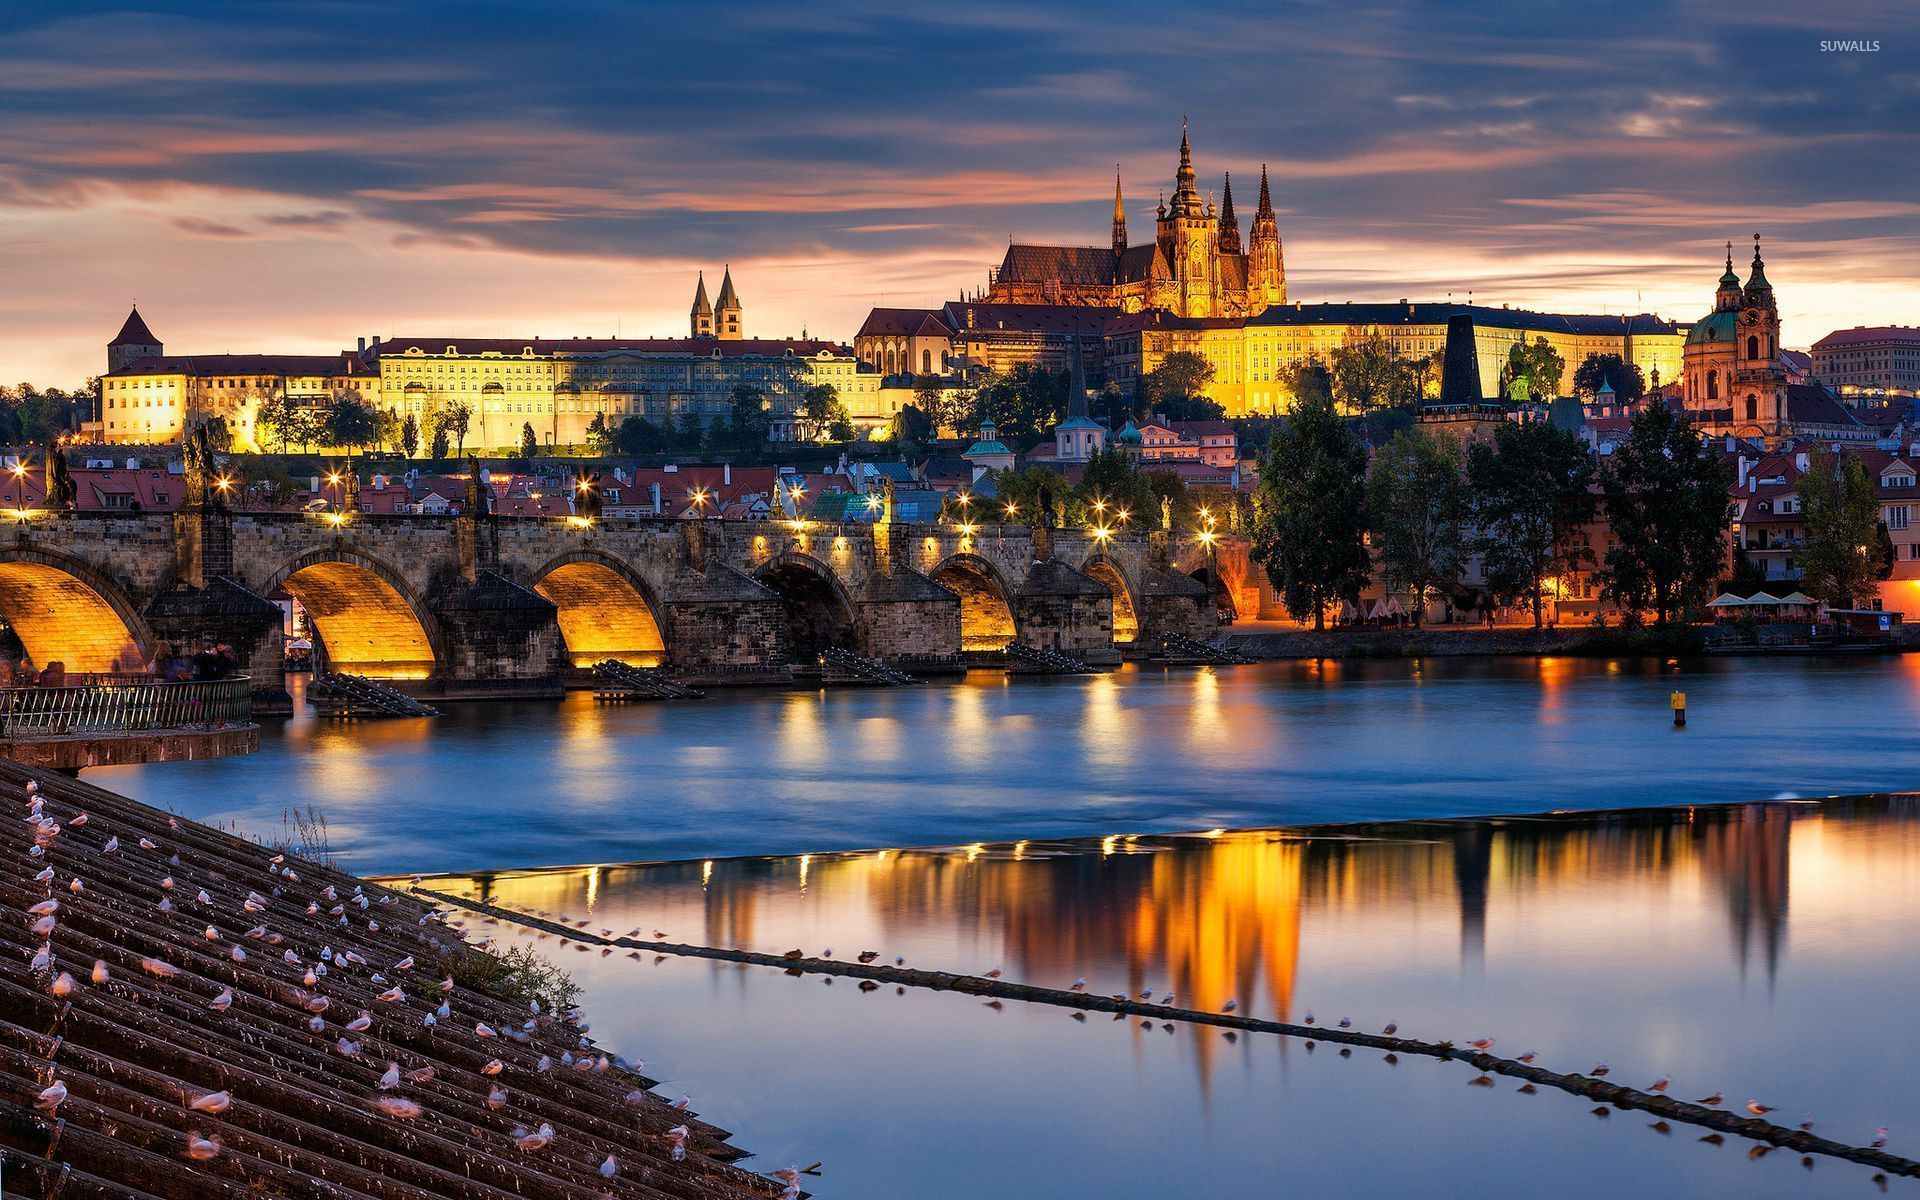 Prague , HD Wallpaper & Backgrounds